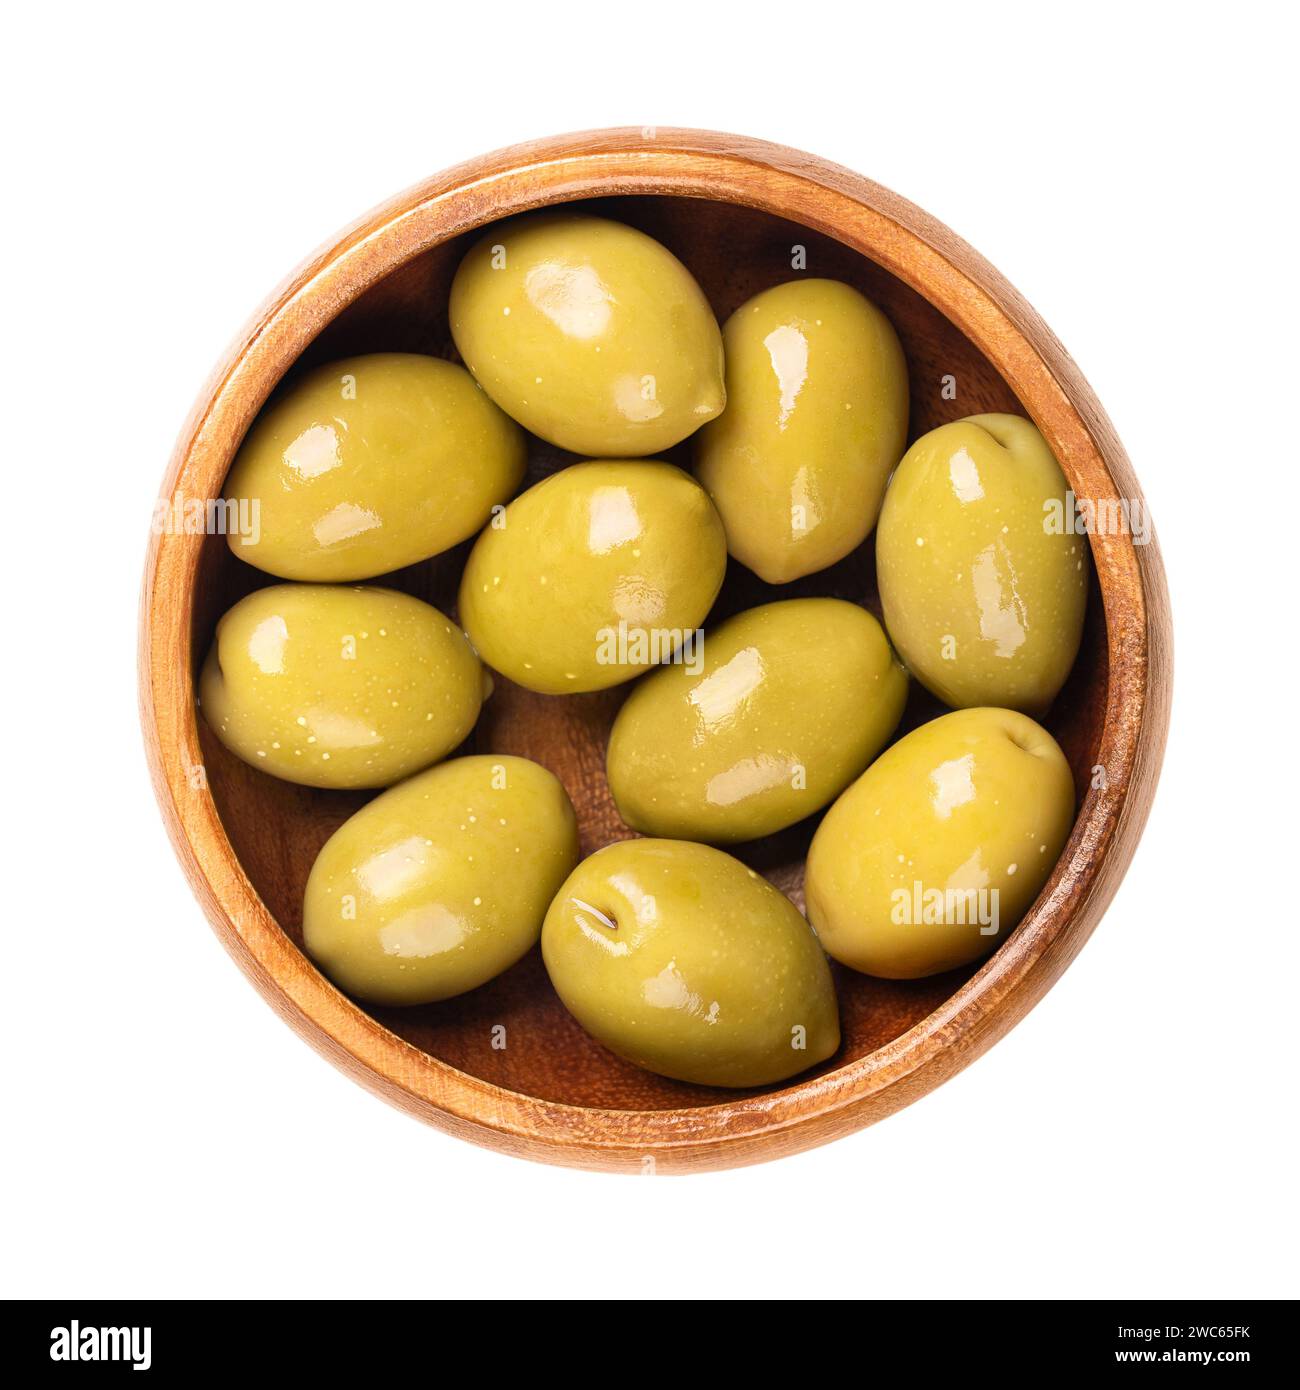 Grüne Oliven mit Grube, ganz eingelegt, große griechische Tafeloliven, in einer Holzschale. Ganze Früchte, wenn sie noch unreif sind und von bitterem Geschmack sind. Stockfoto